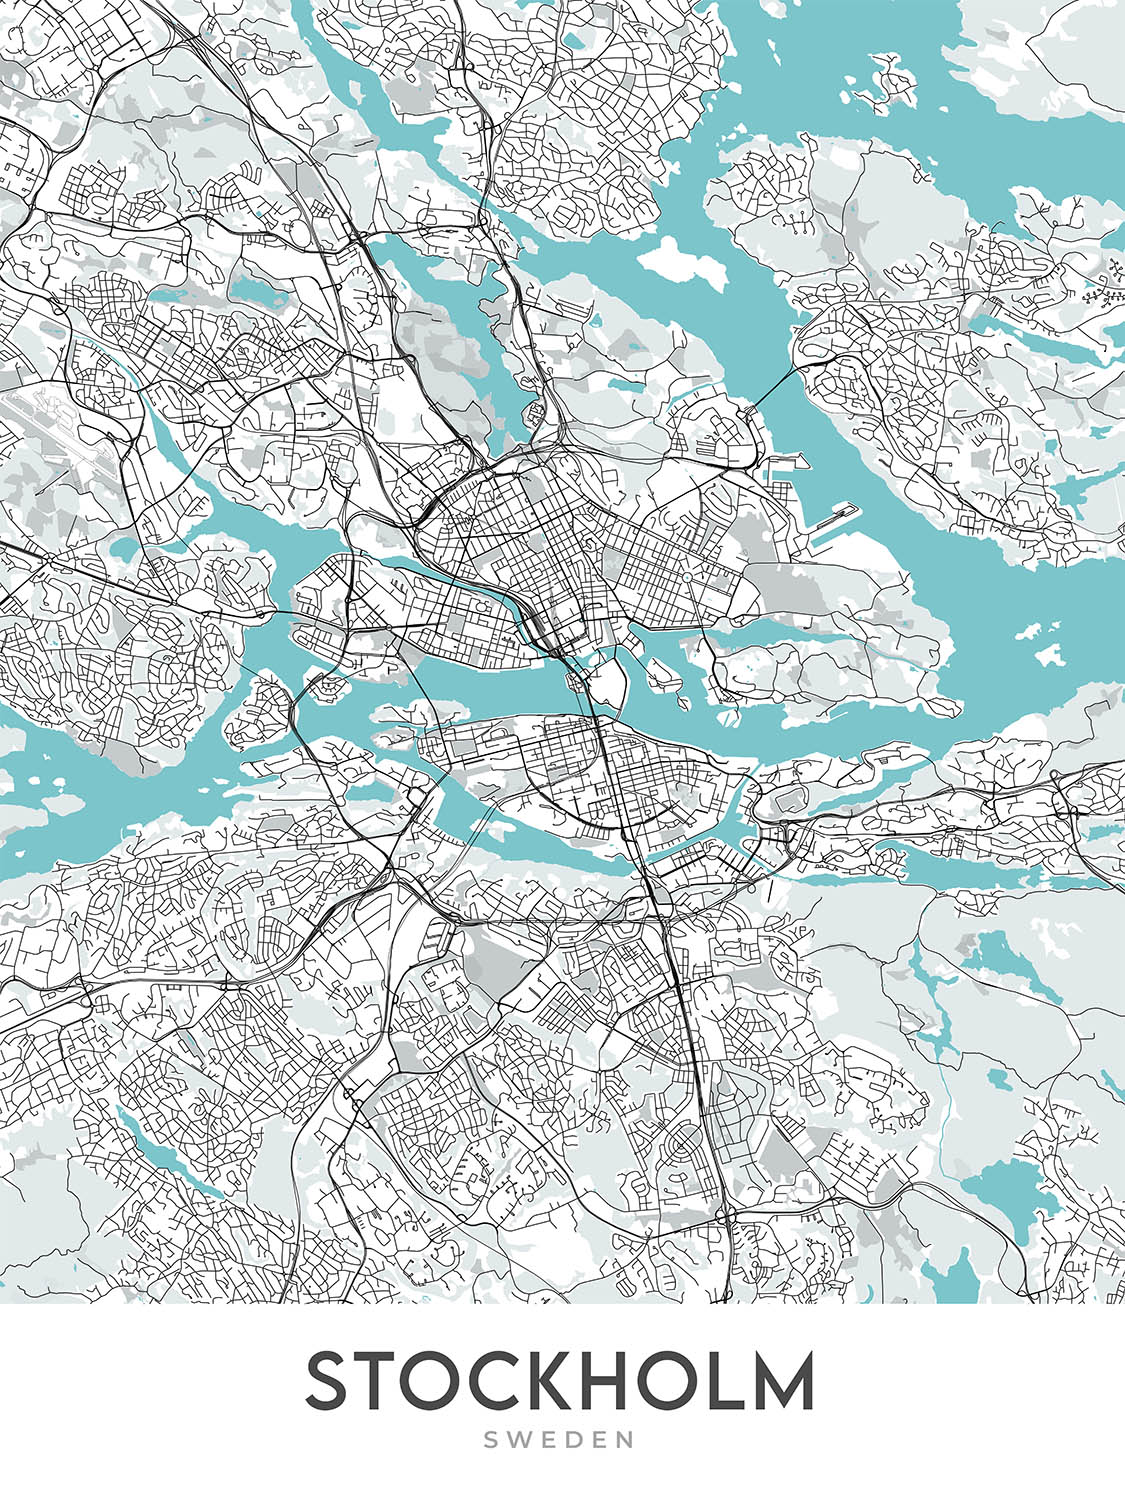 Moderner Stadtplan von Stockholm, Schweden: Gamla Stan, Stockholmer Schloss, Djurgården, E4, E18